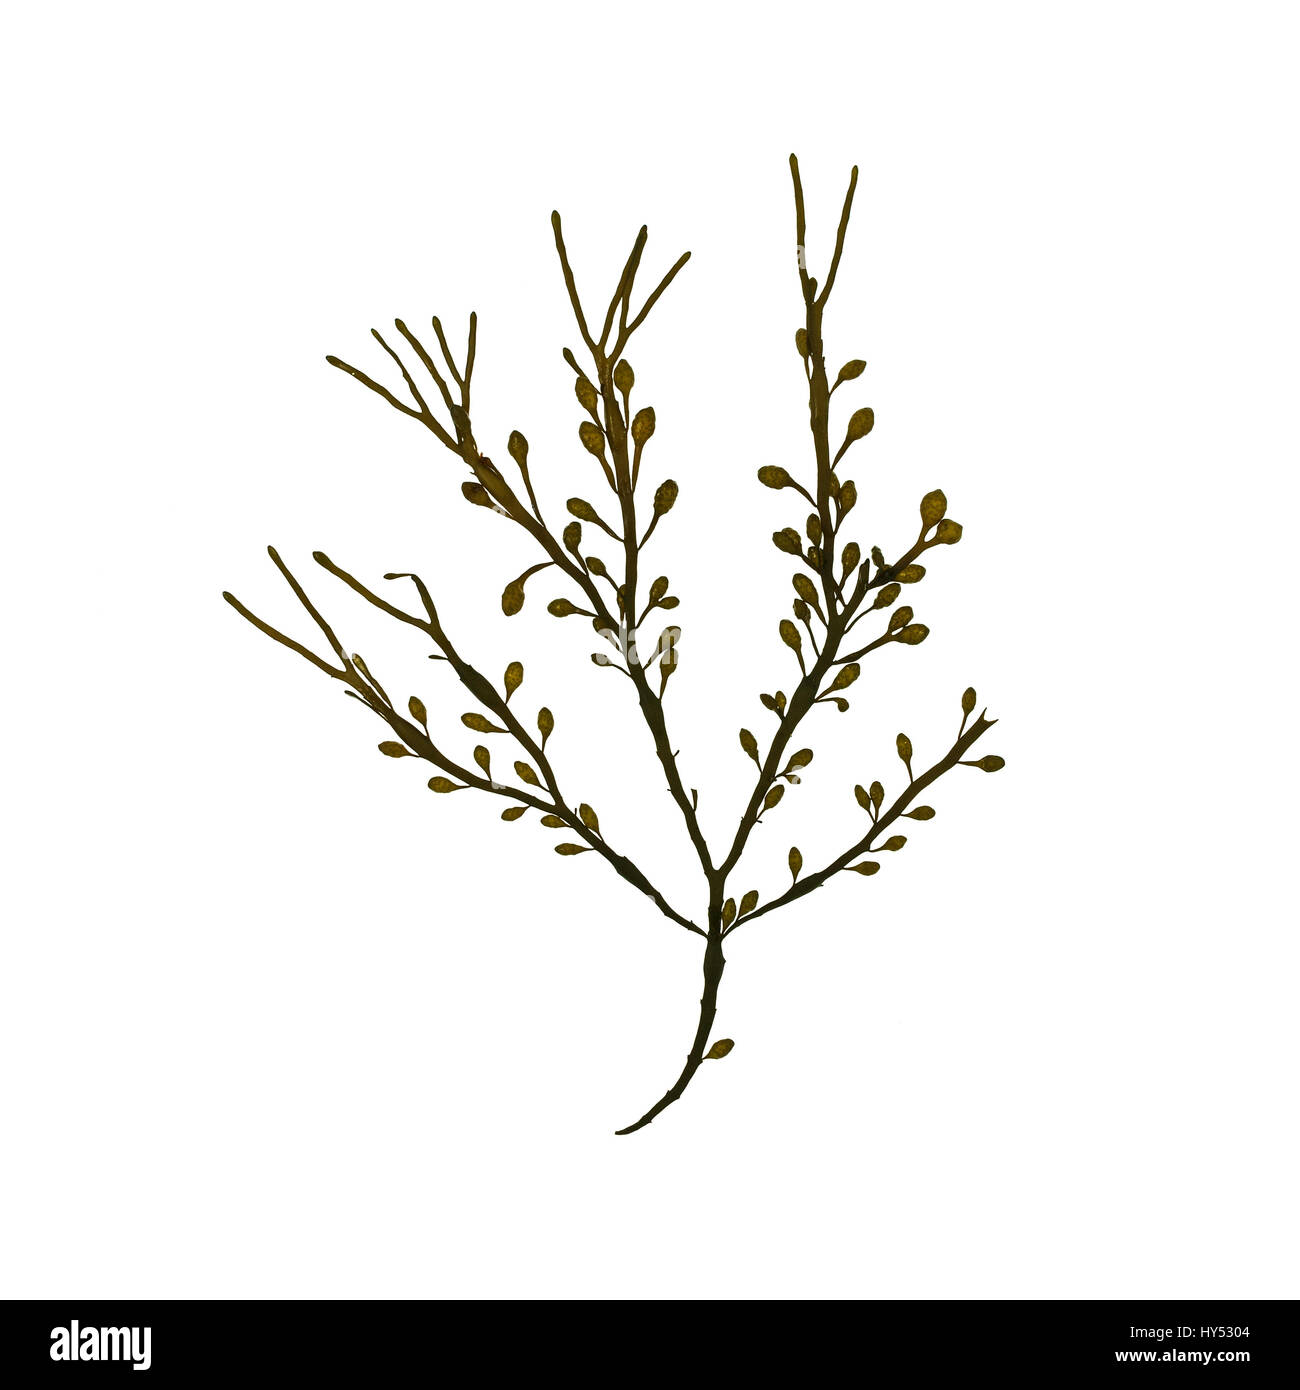 Ascophyllum nodosum (Rockweed or Knotted Wrack) photographed on a light box/white background. Stock Photo